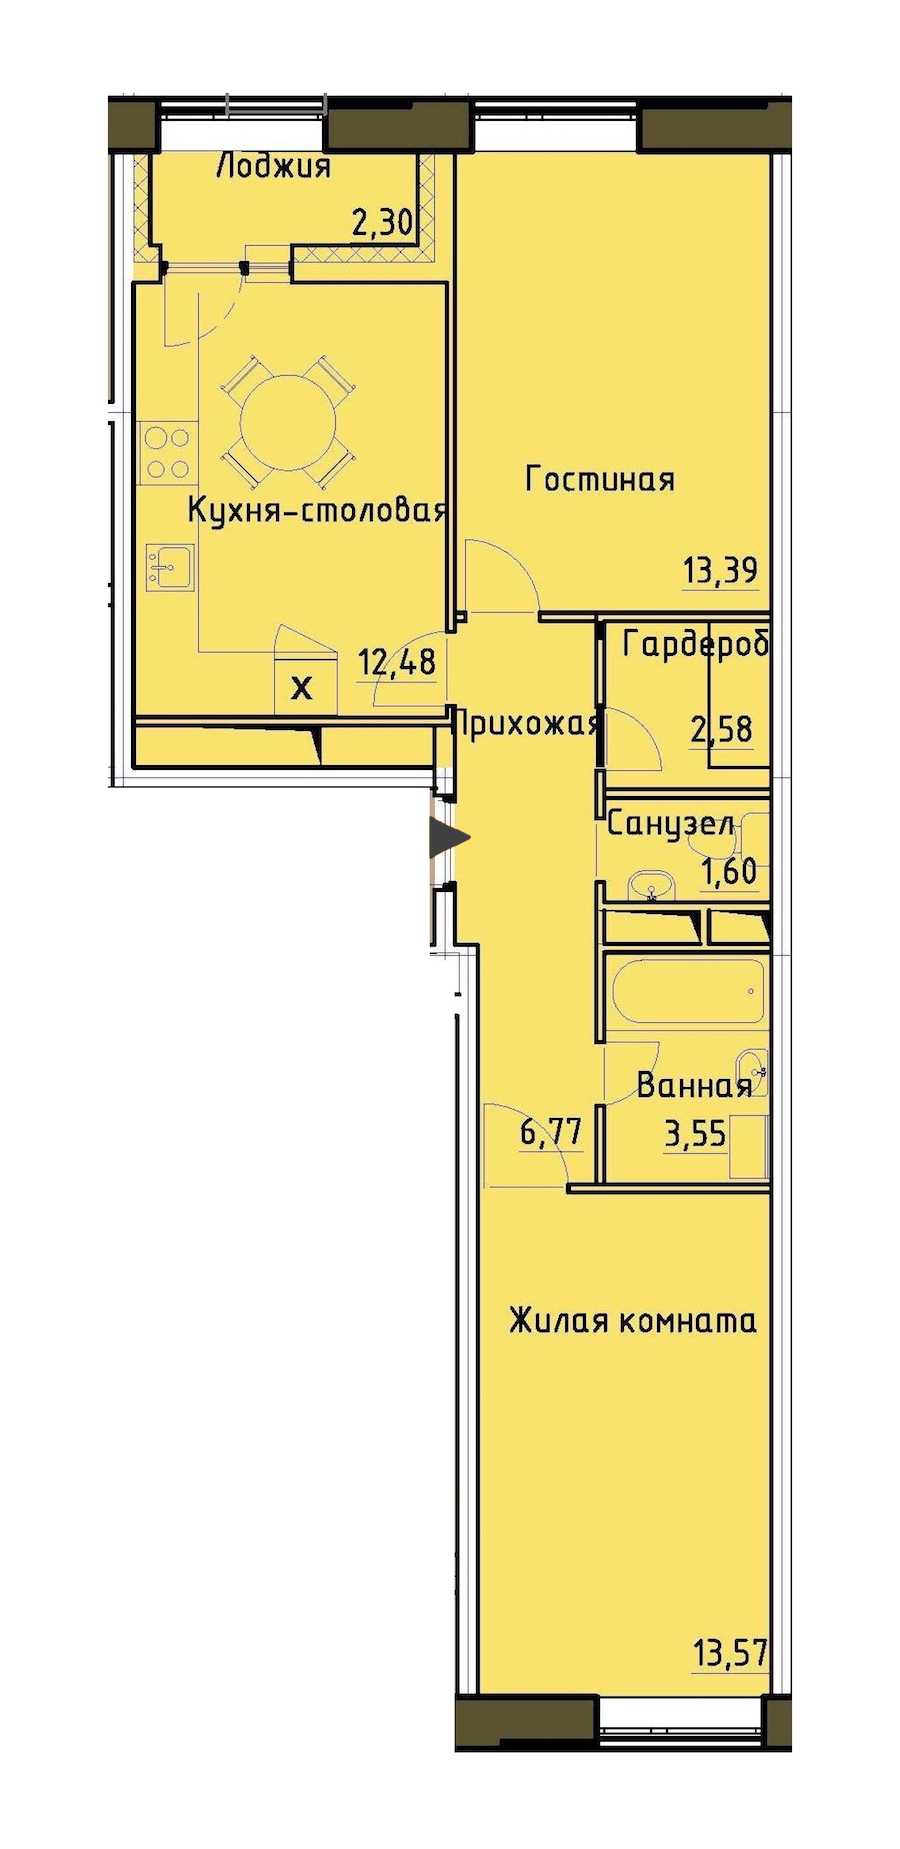 Двухкомнатная квартира в : площадь 55.09 м2 , этаж: 12 – купить в Санкт-Петербурге